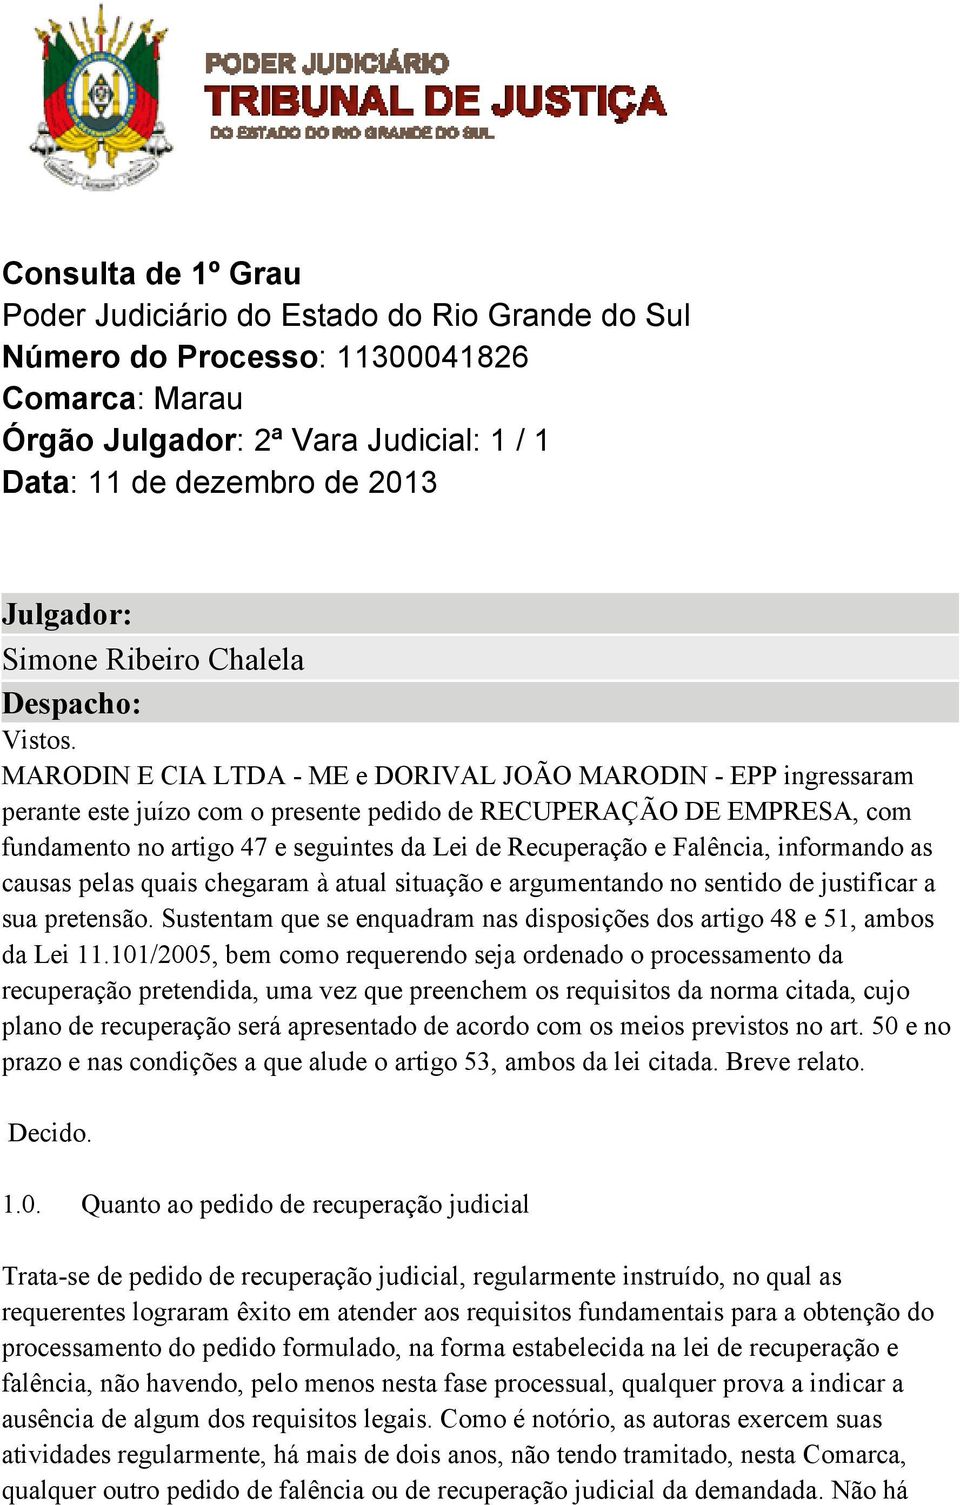 MARODIN E CIA LTDA - ME e DORIVAL JOÃO MARODIN - EPP ingressaram perante este juízo com o presente pedido de RECUPERAÇÃO DE EMPRESA, com fundamento no artigo 47 e seguintes da Lei de Recuperação e